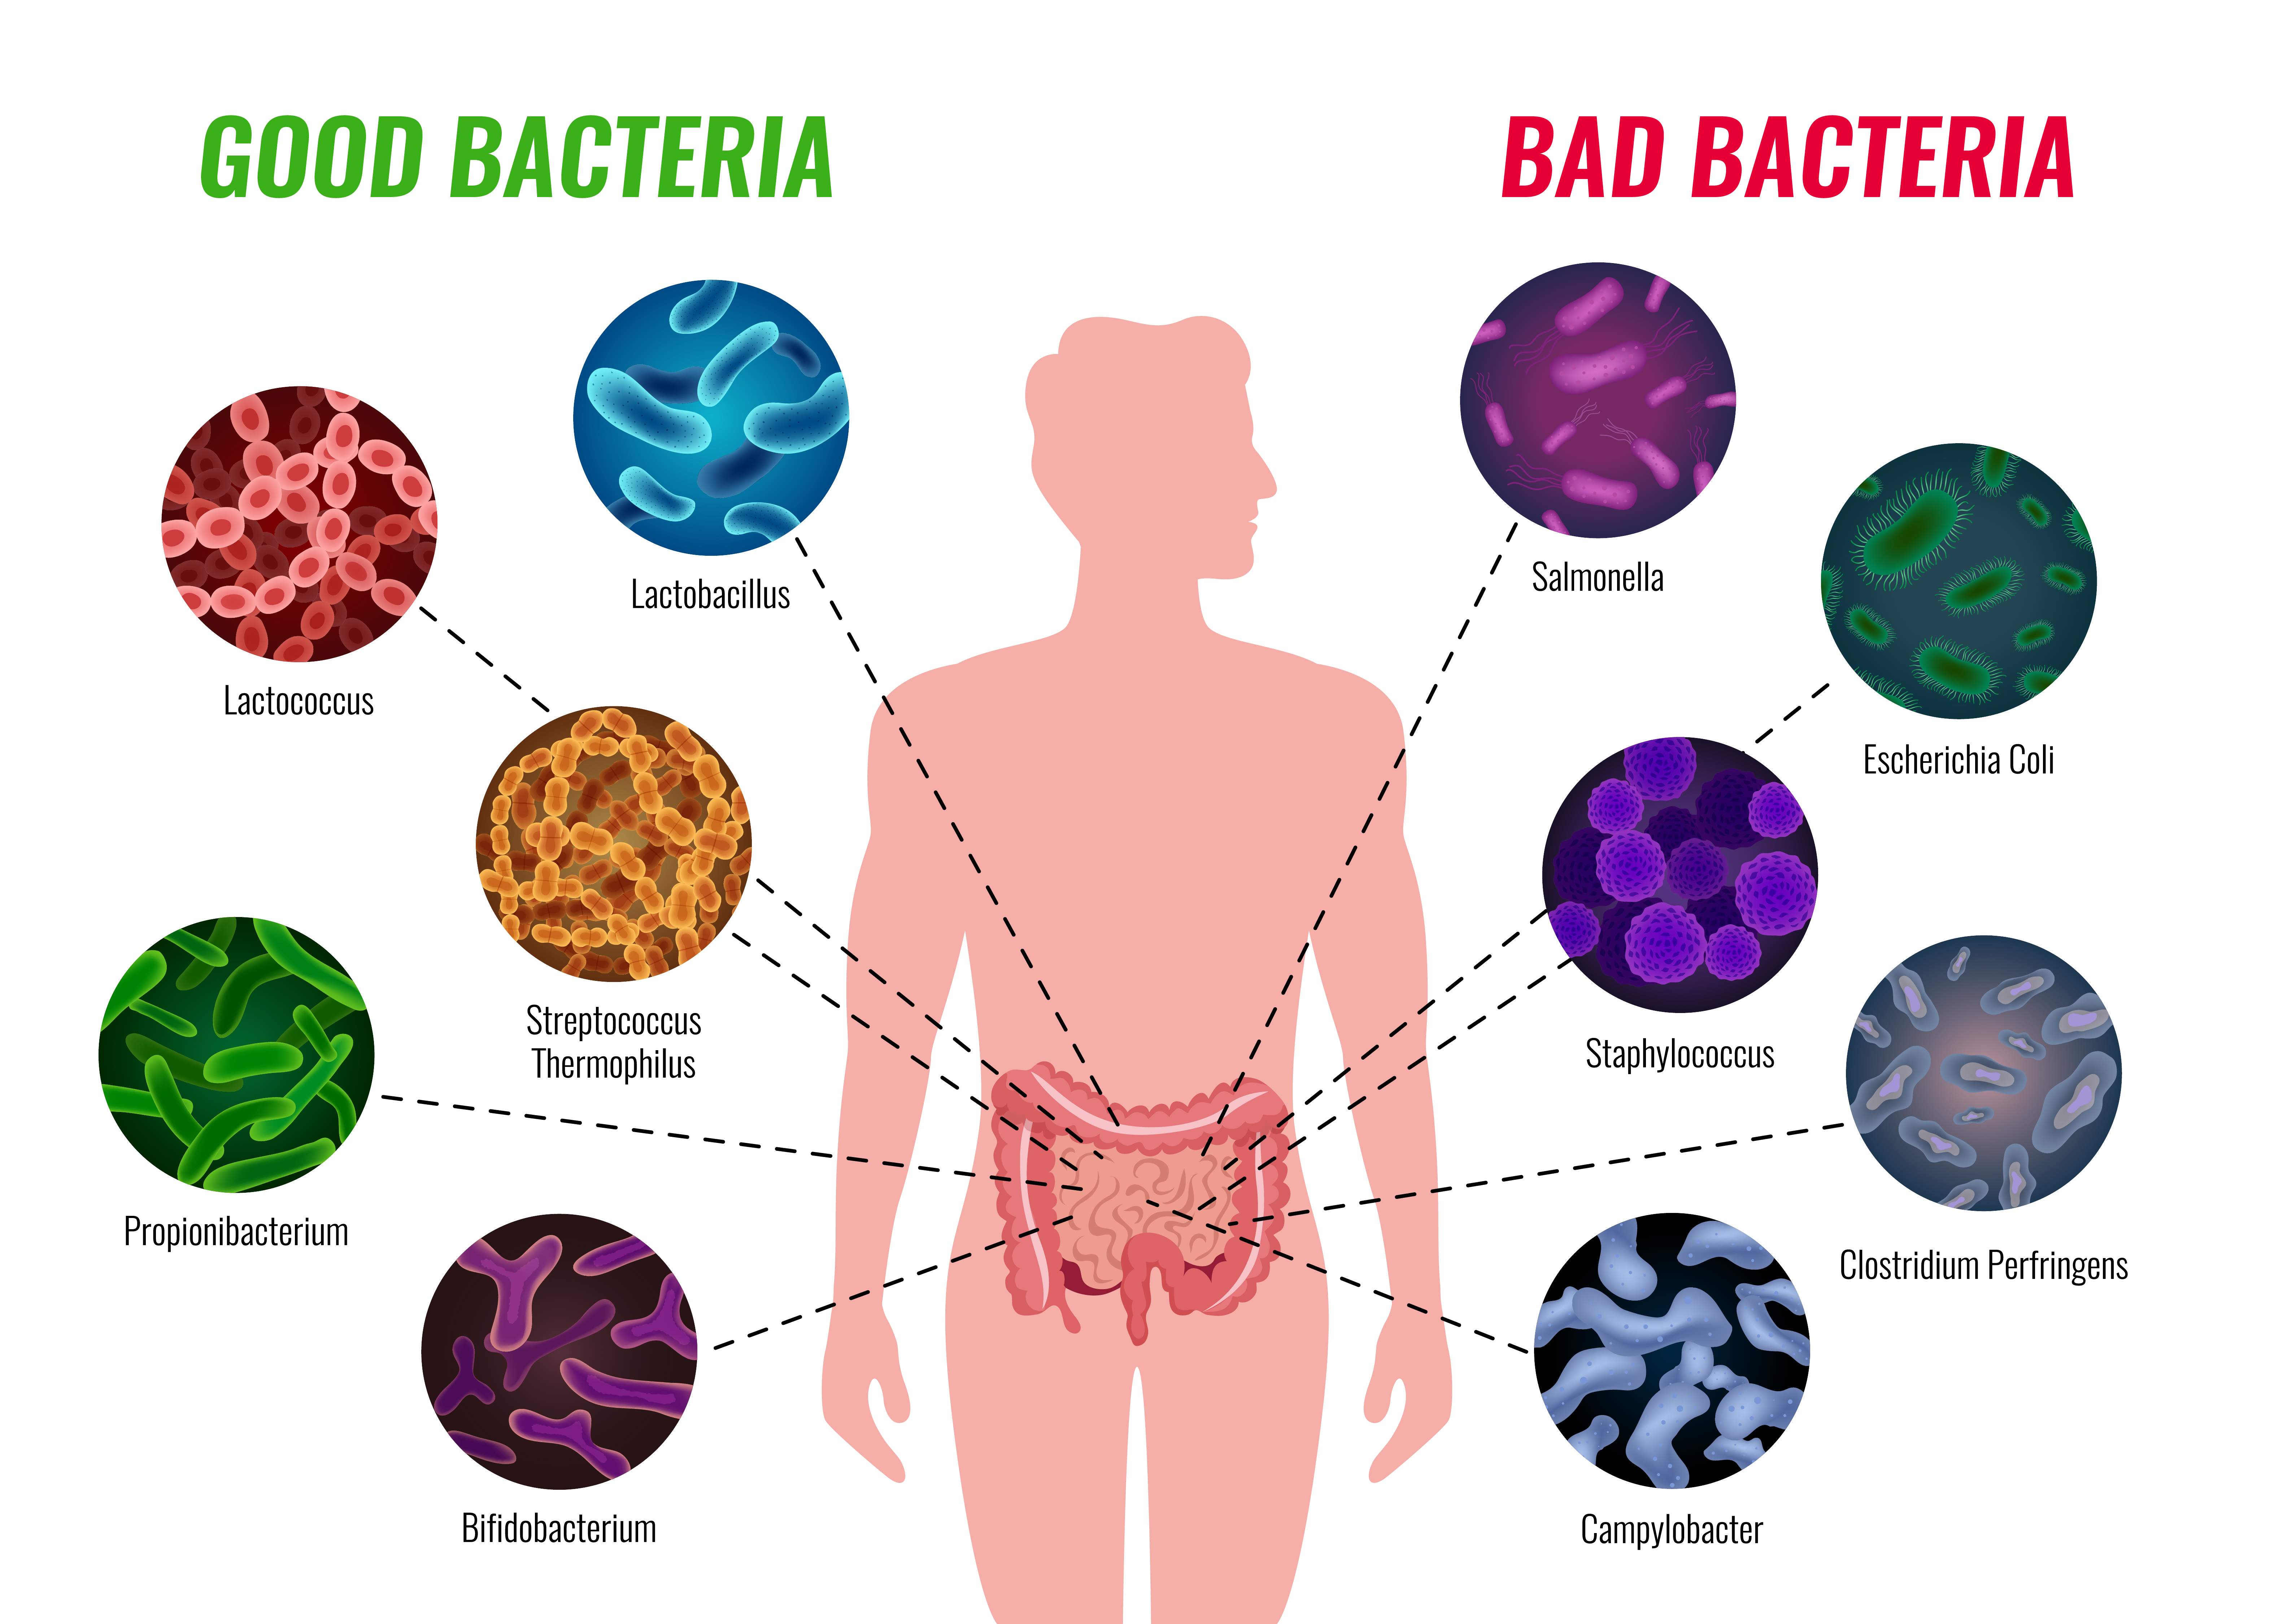 biodiversità-ambientale-microbiota-intestinale-alimentazione-stress-disbiosi-farmaci-ormoni-fibre-eubiosi-probiotici-prebiotici-attività-fisica-stile-di-vita-sano